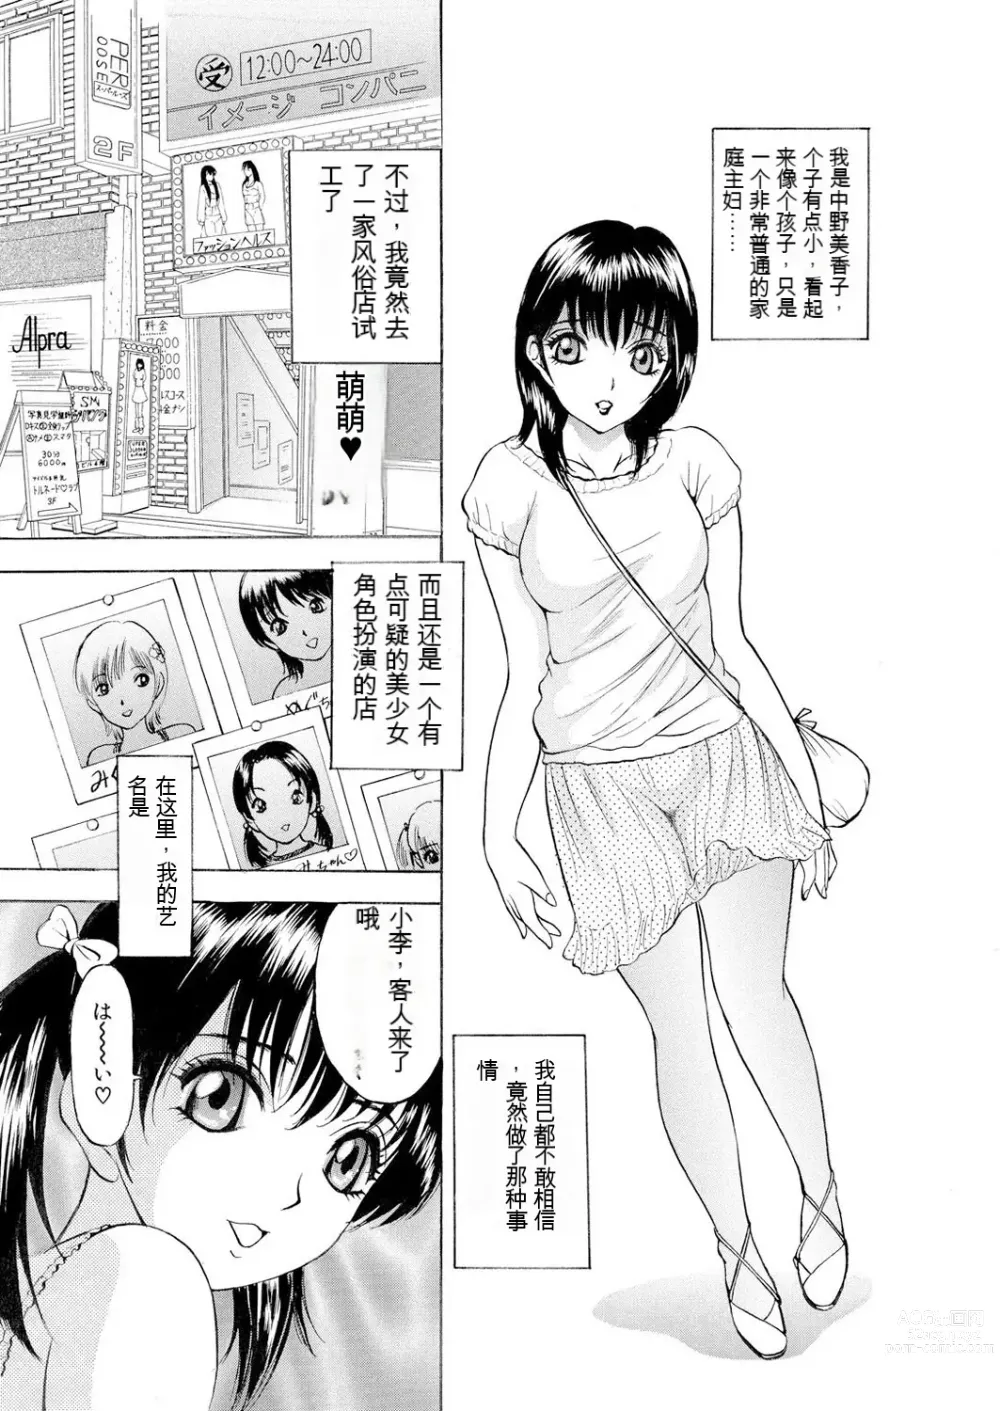 Page 20 of manga Netorare